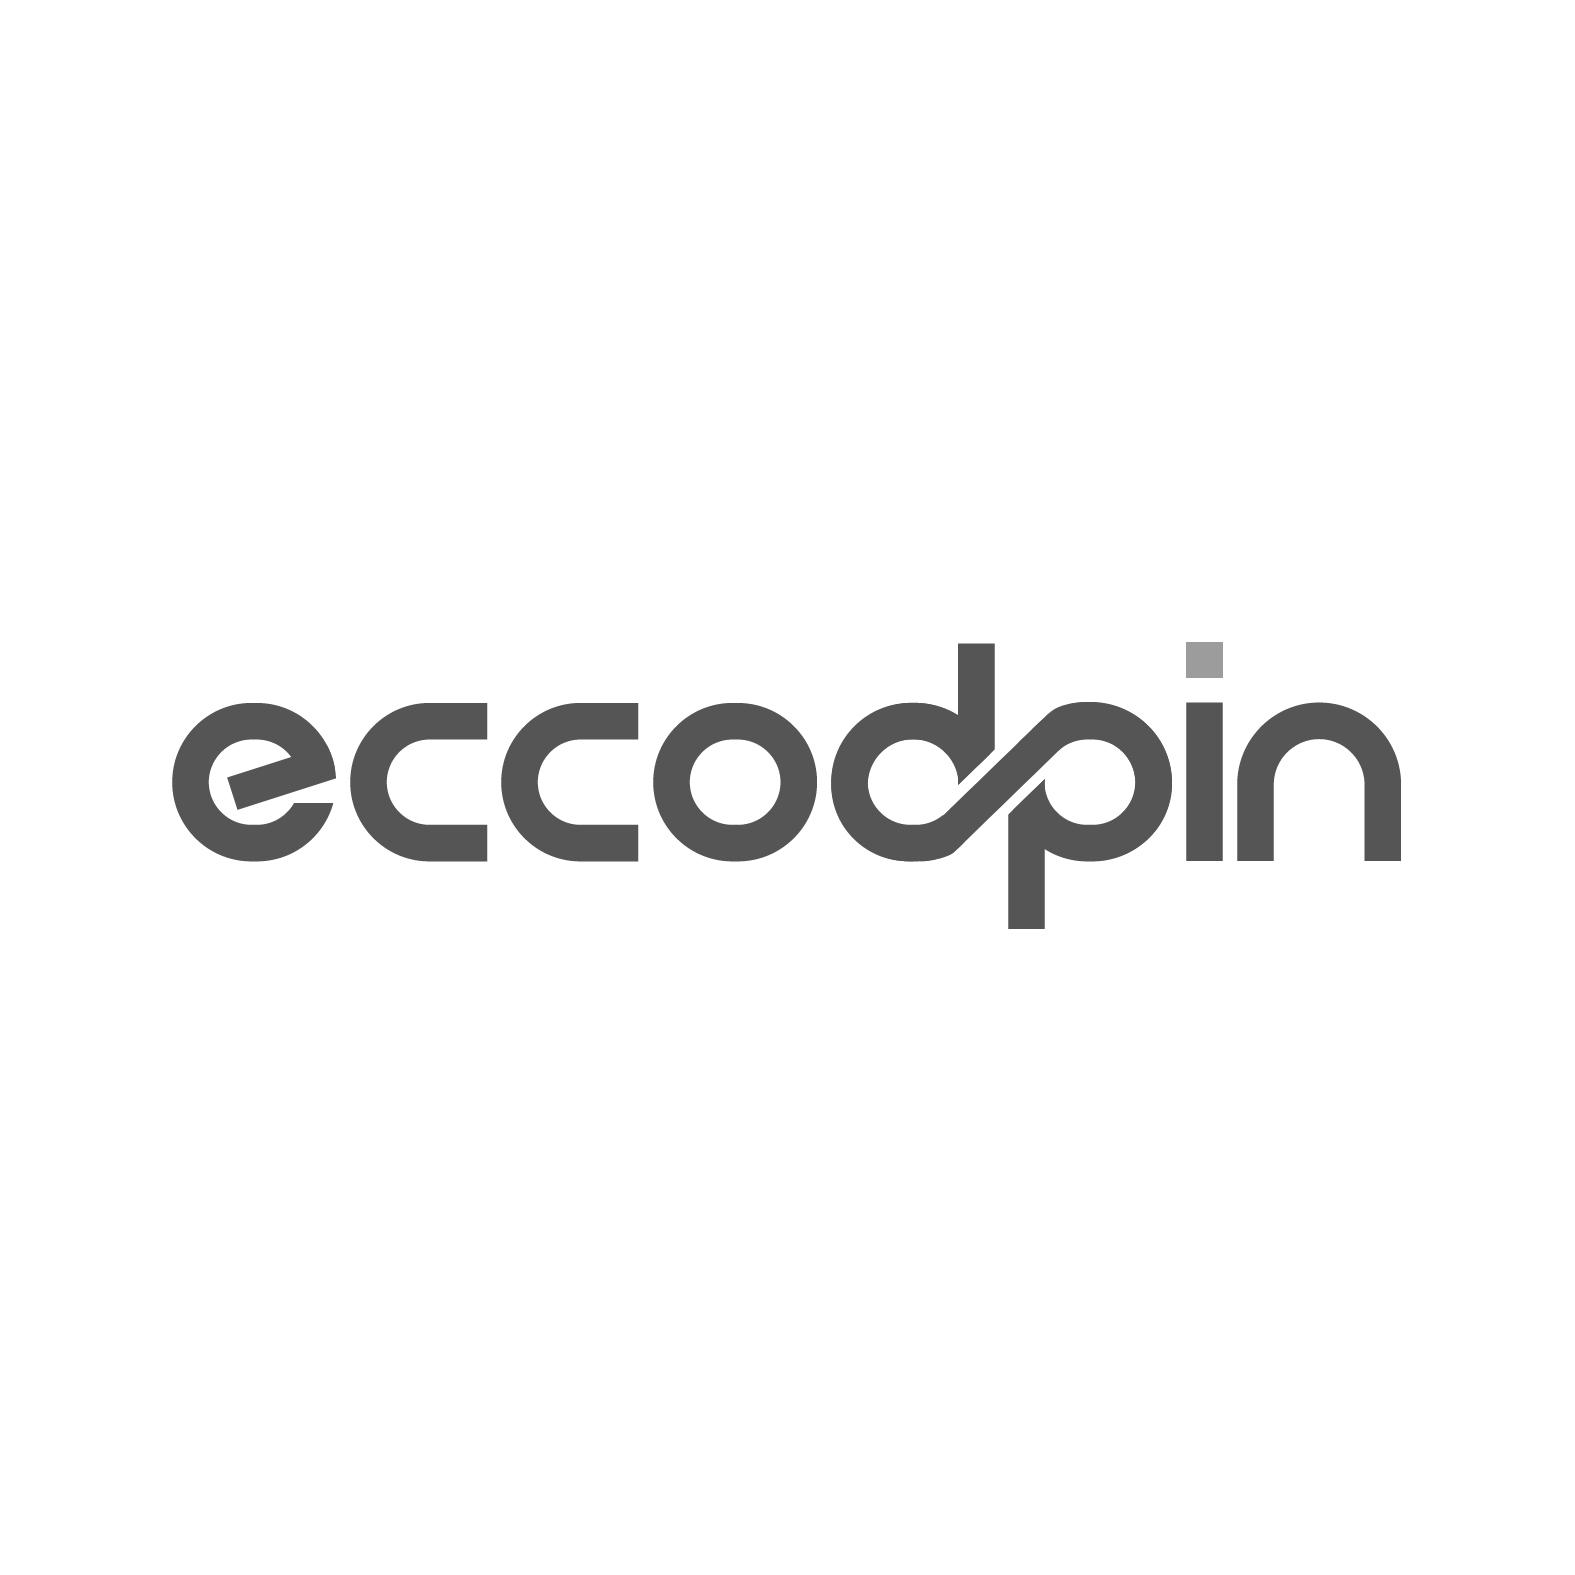 ECCODPIN商标转让